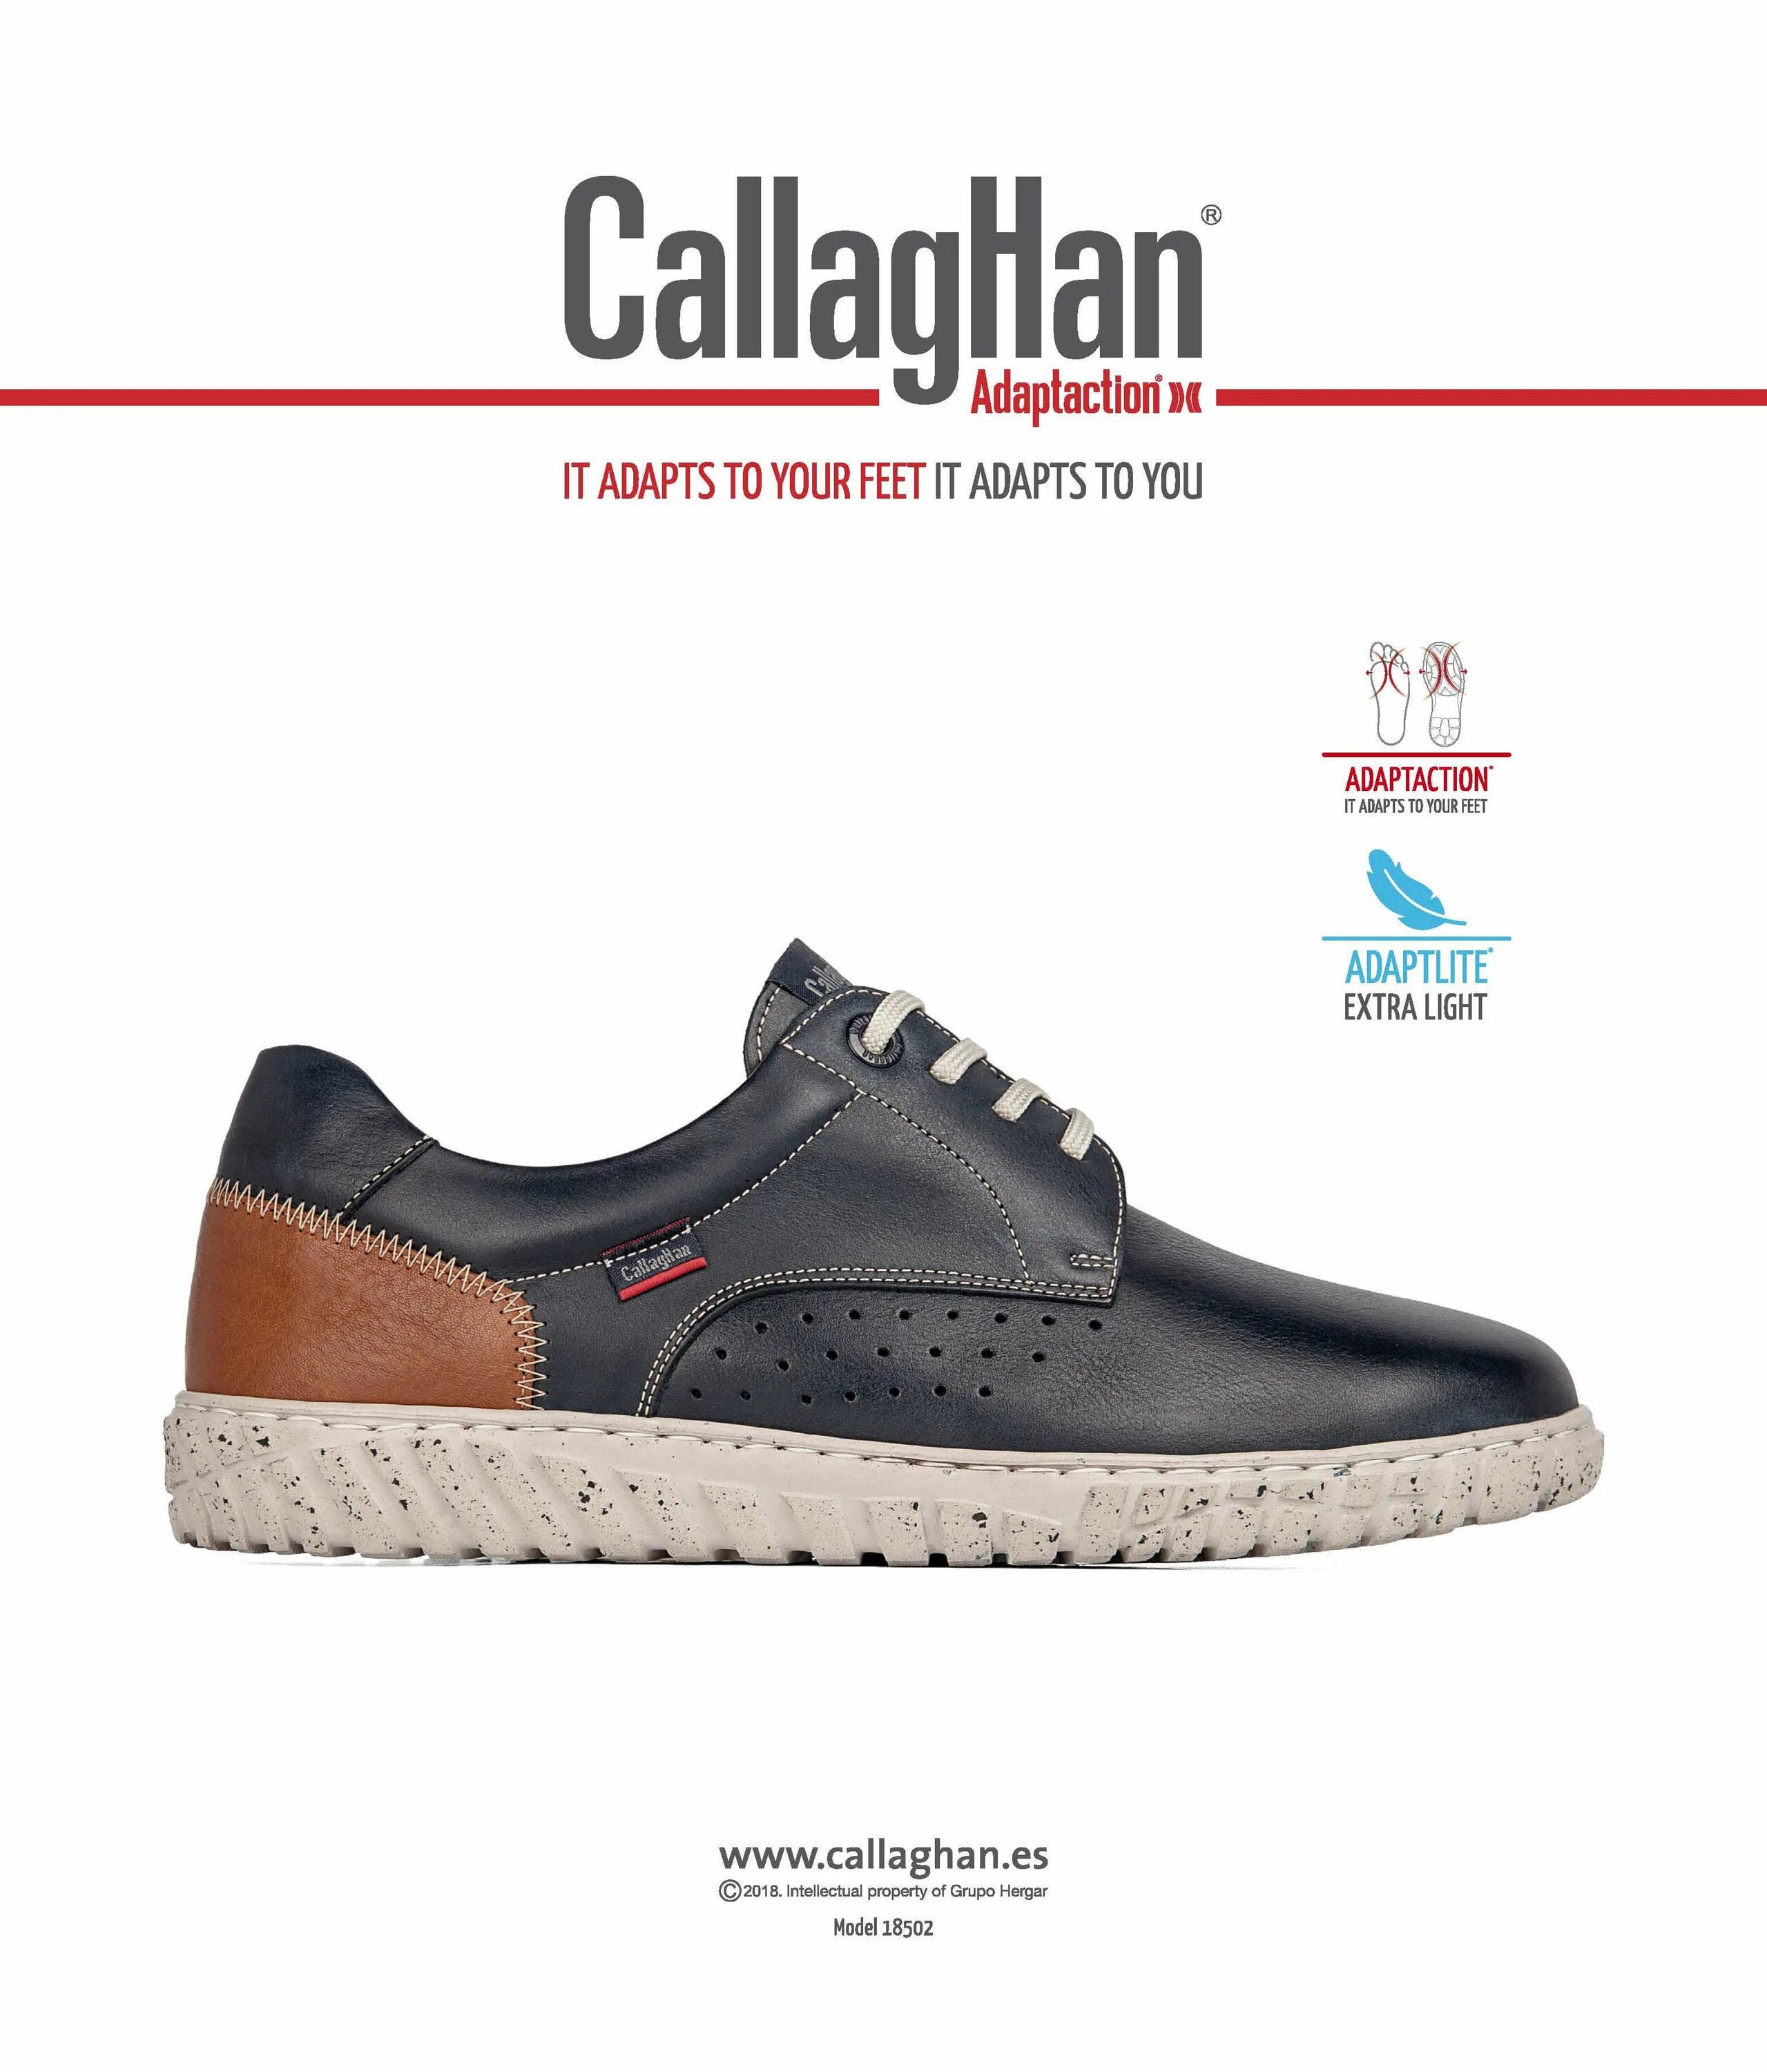 Callaghan обувь. Callaghan обувь кроссовки. Испанский кроссовки Callaghan. Обувь Callaghan adaptation мужская. Callaghan кроссовки женские.